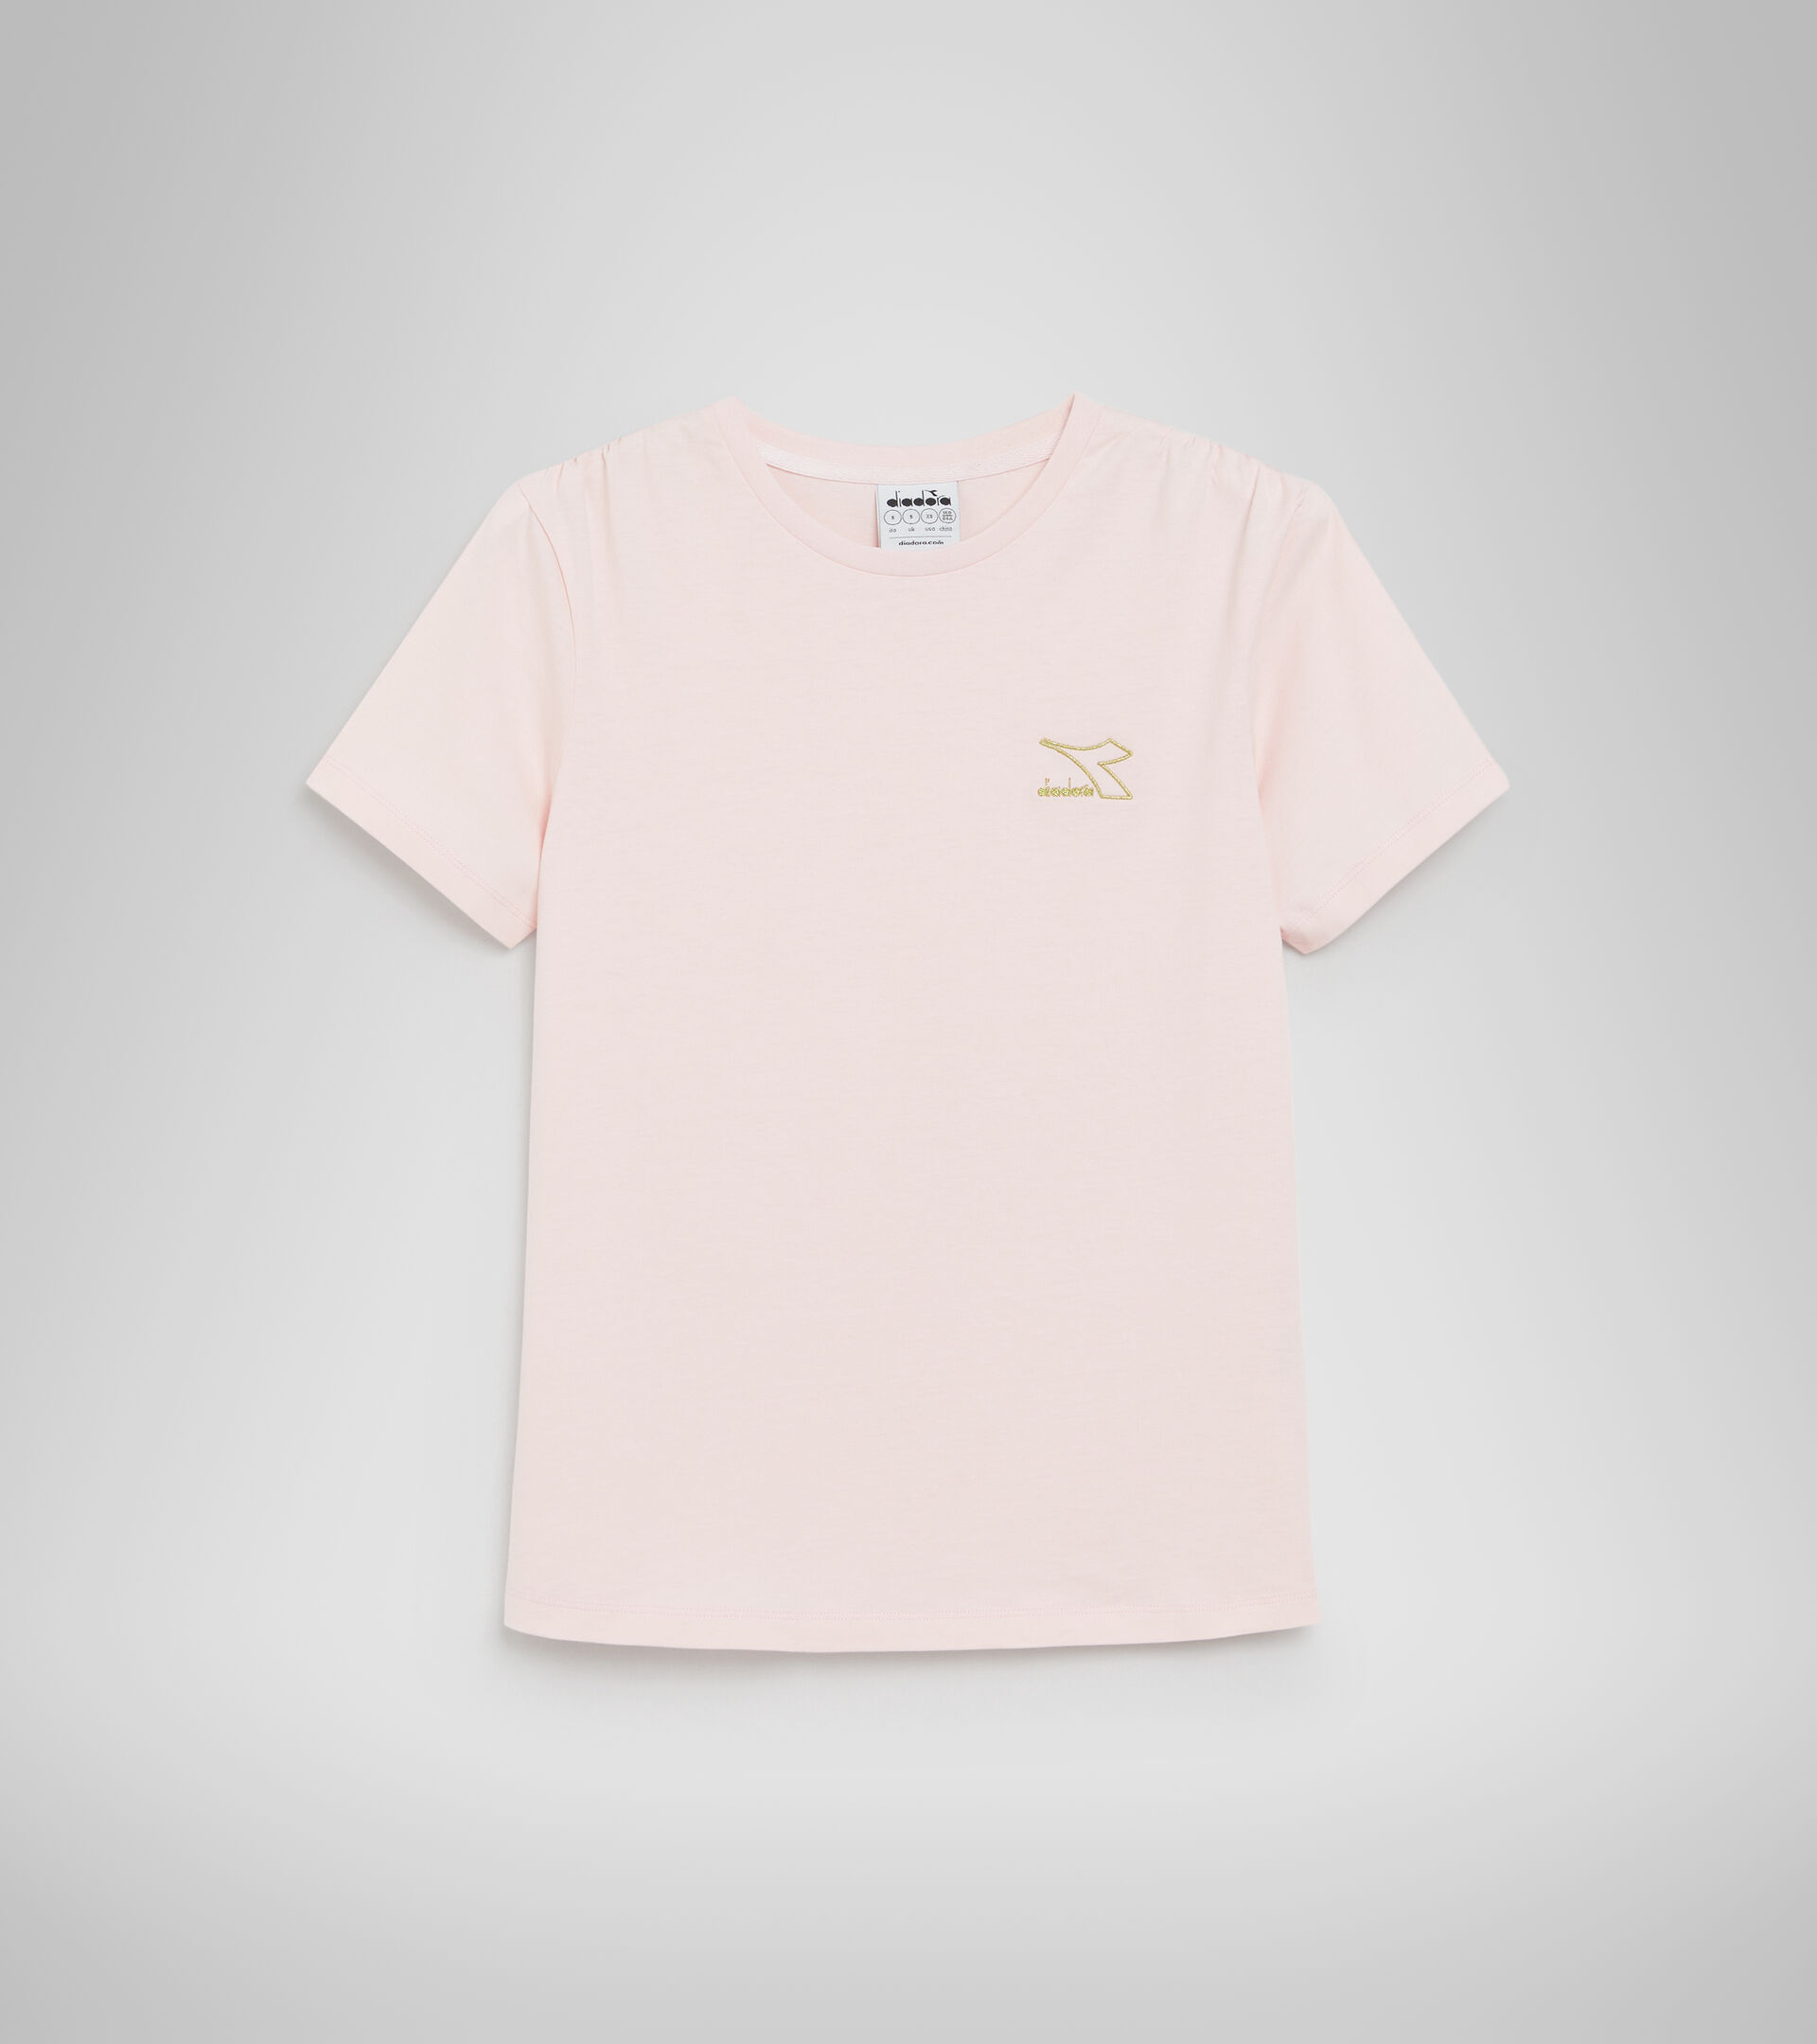 Sportliches T-Shirt - Damen L.T-SHIRT SS FLOUNCE KRISTALL ROSA - Diadora